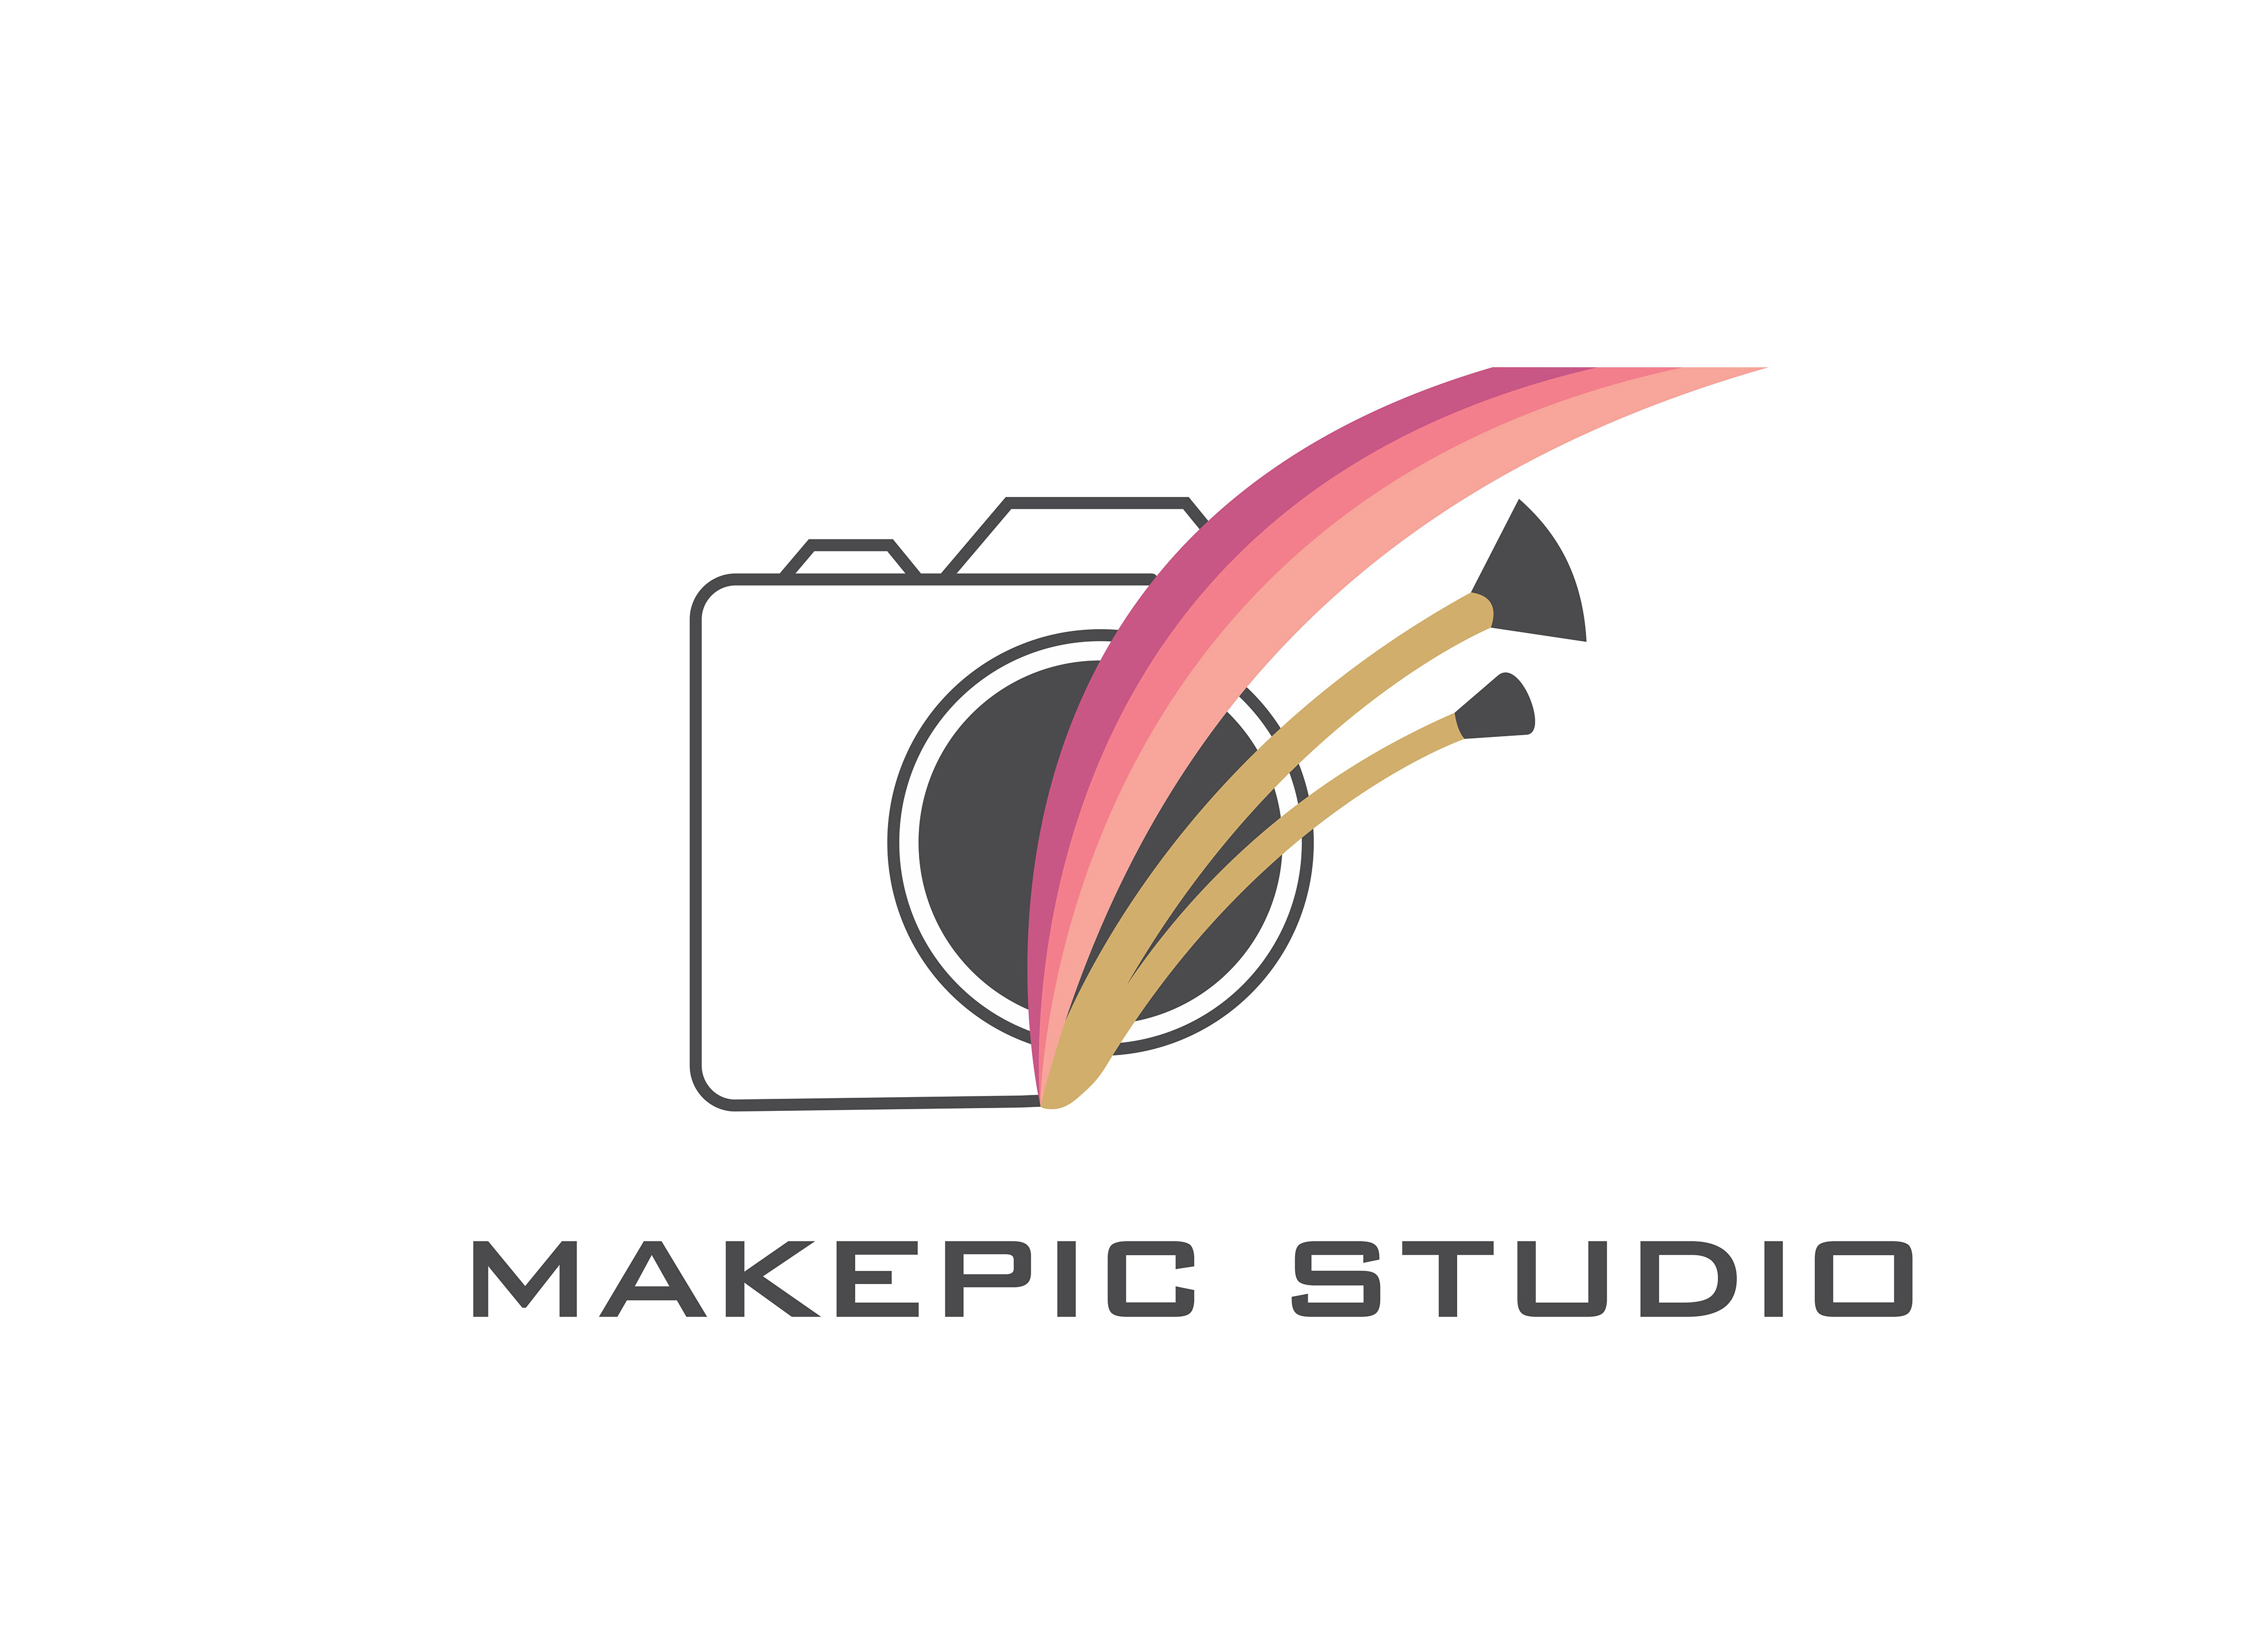 MakePic Studio